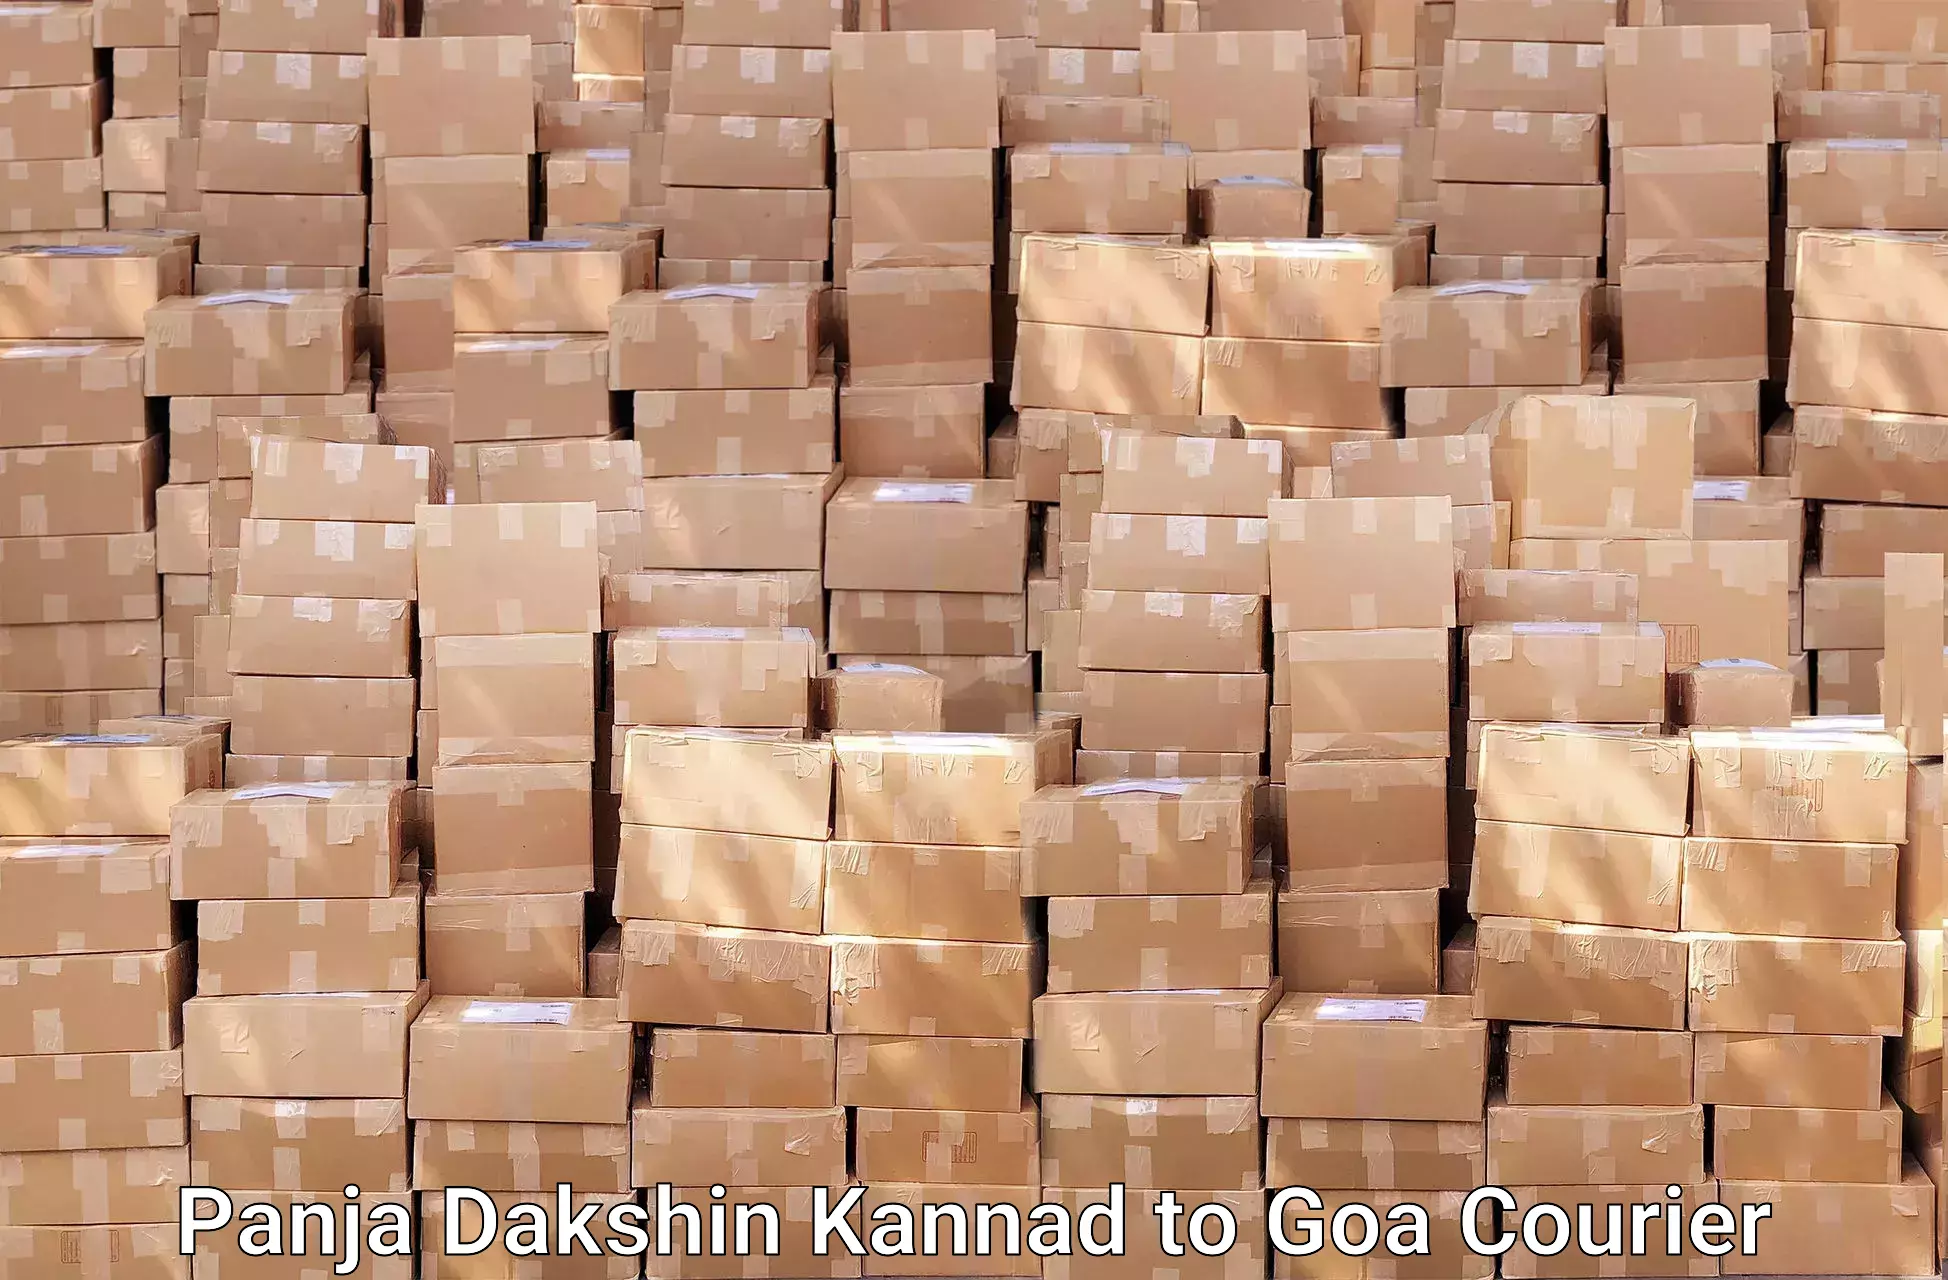 Efficient moving company Panja Dakshin Kannad to Margao